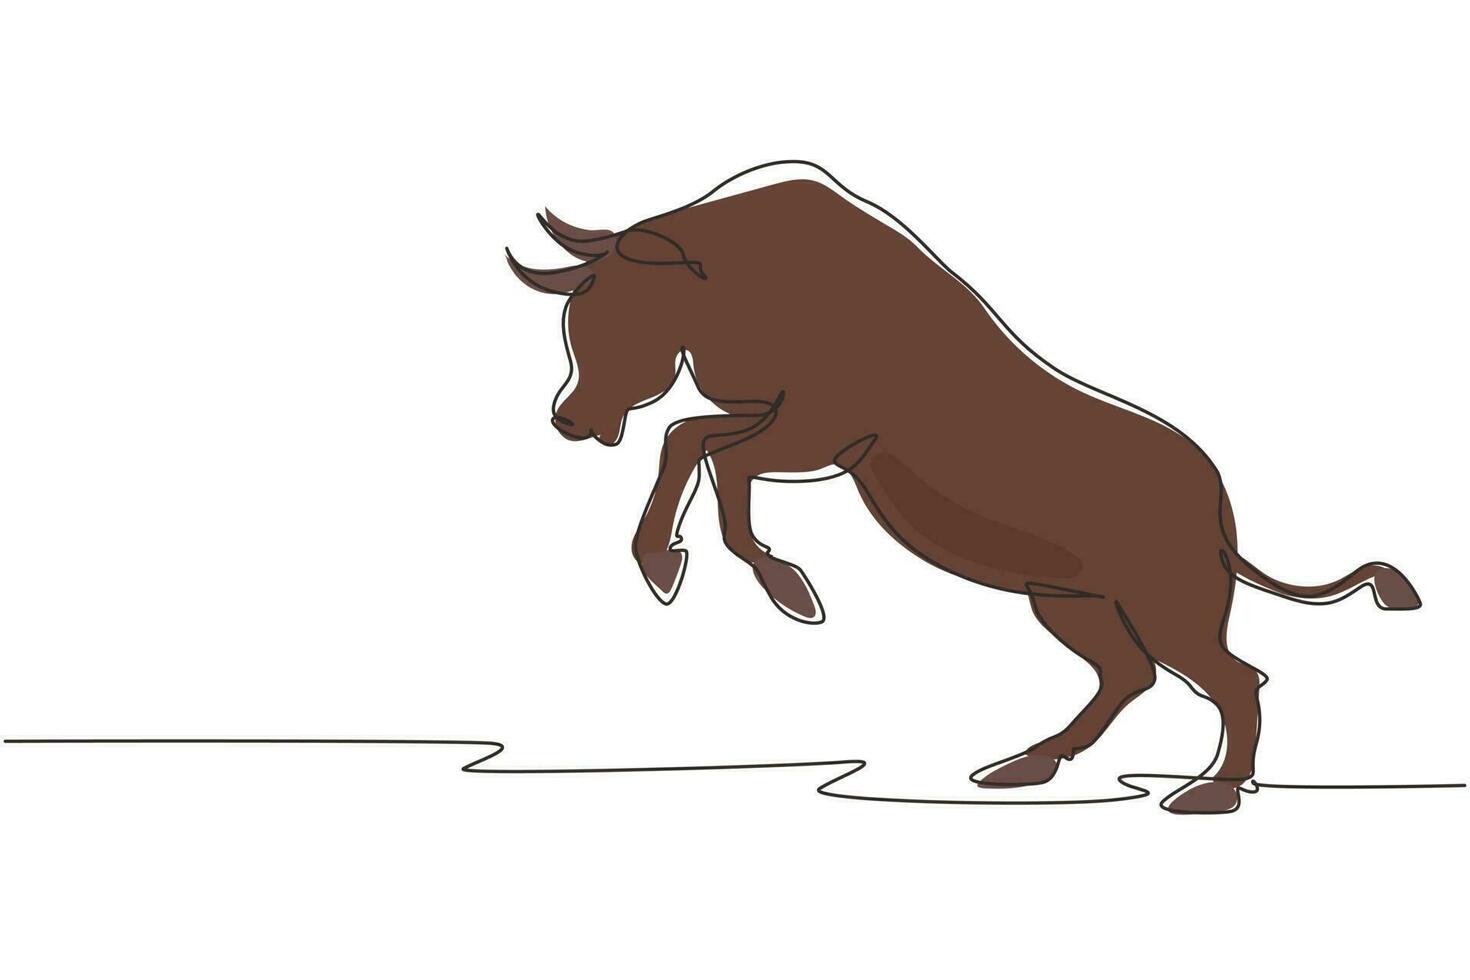 singola linea aggressività del disegno di una linea attacco di toro selvaggio. il toro è pieno di energia. il grande bufalo si alza prima di correre. toro arrabbiato all'arena del rodeo. illustrazione vettoriale grafica di disegno a linea continua